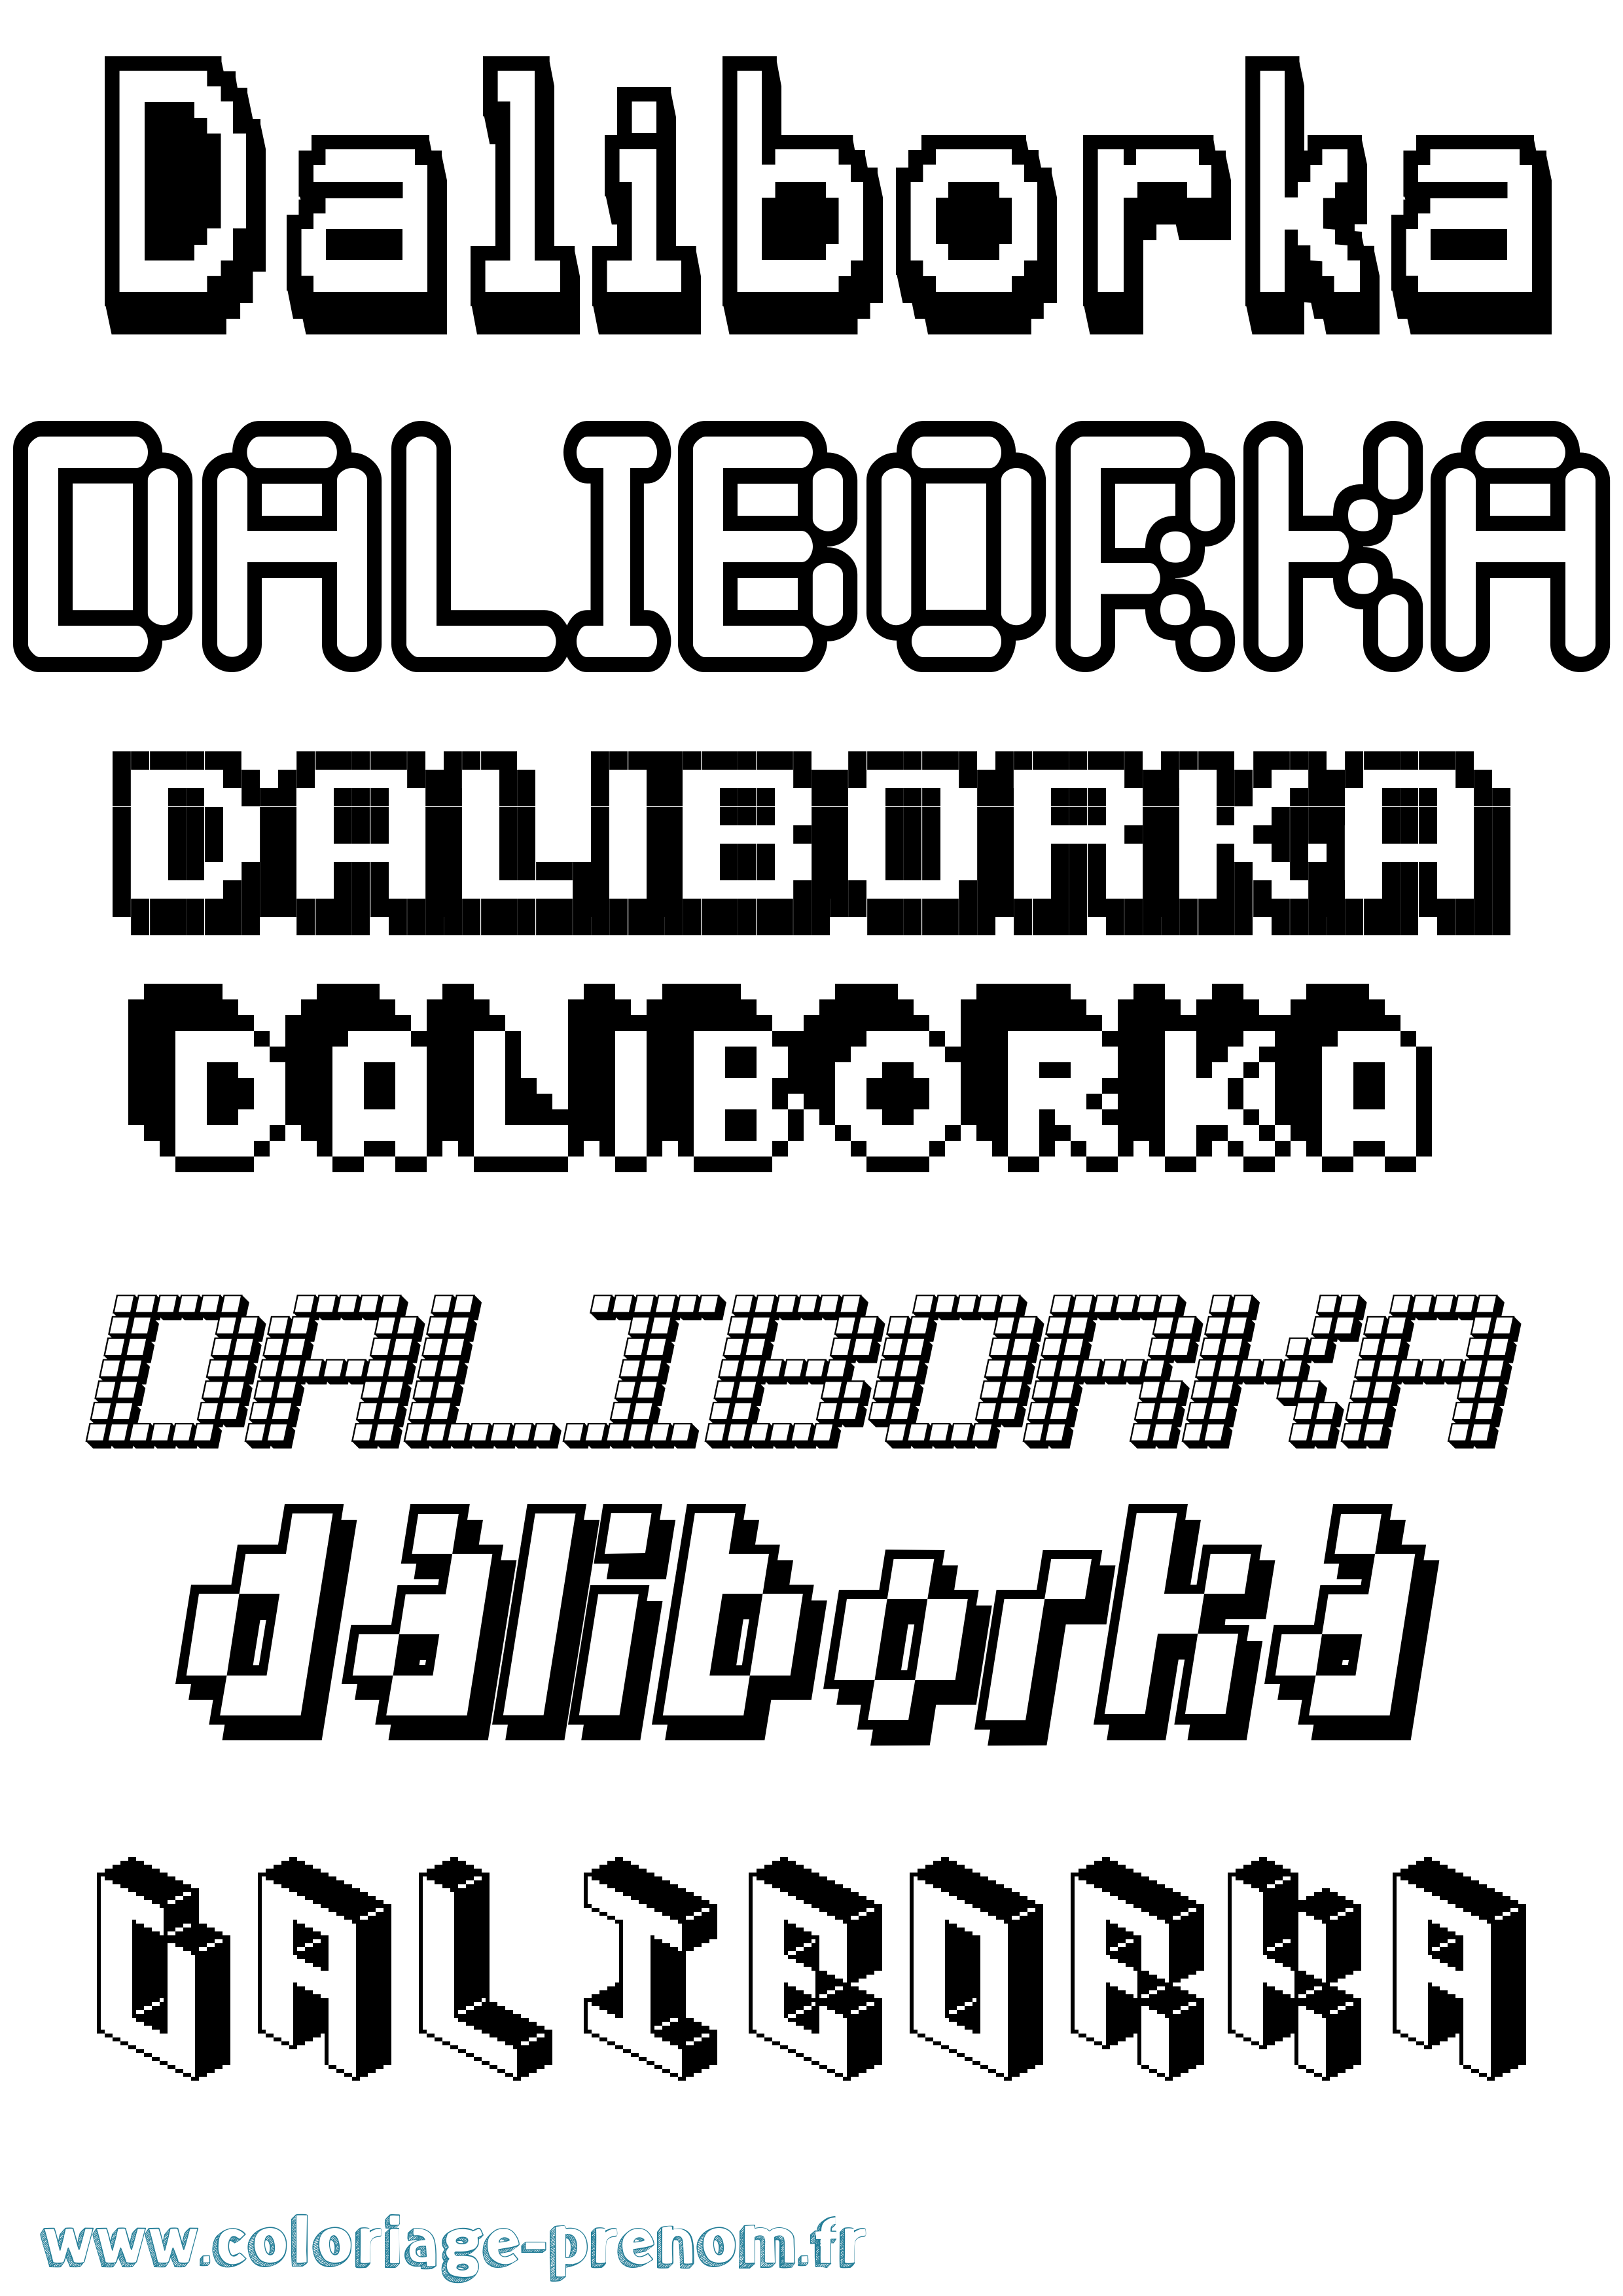 Coloriage prénom Daliborka Pixel